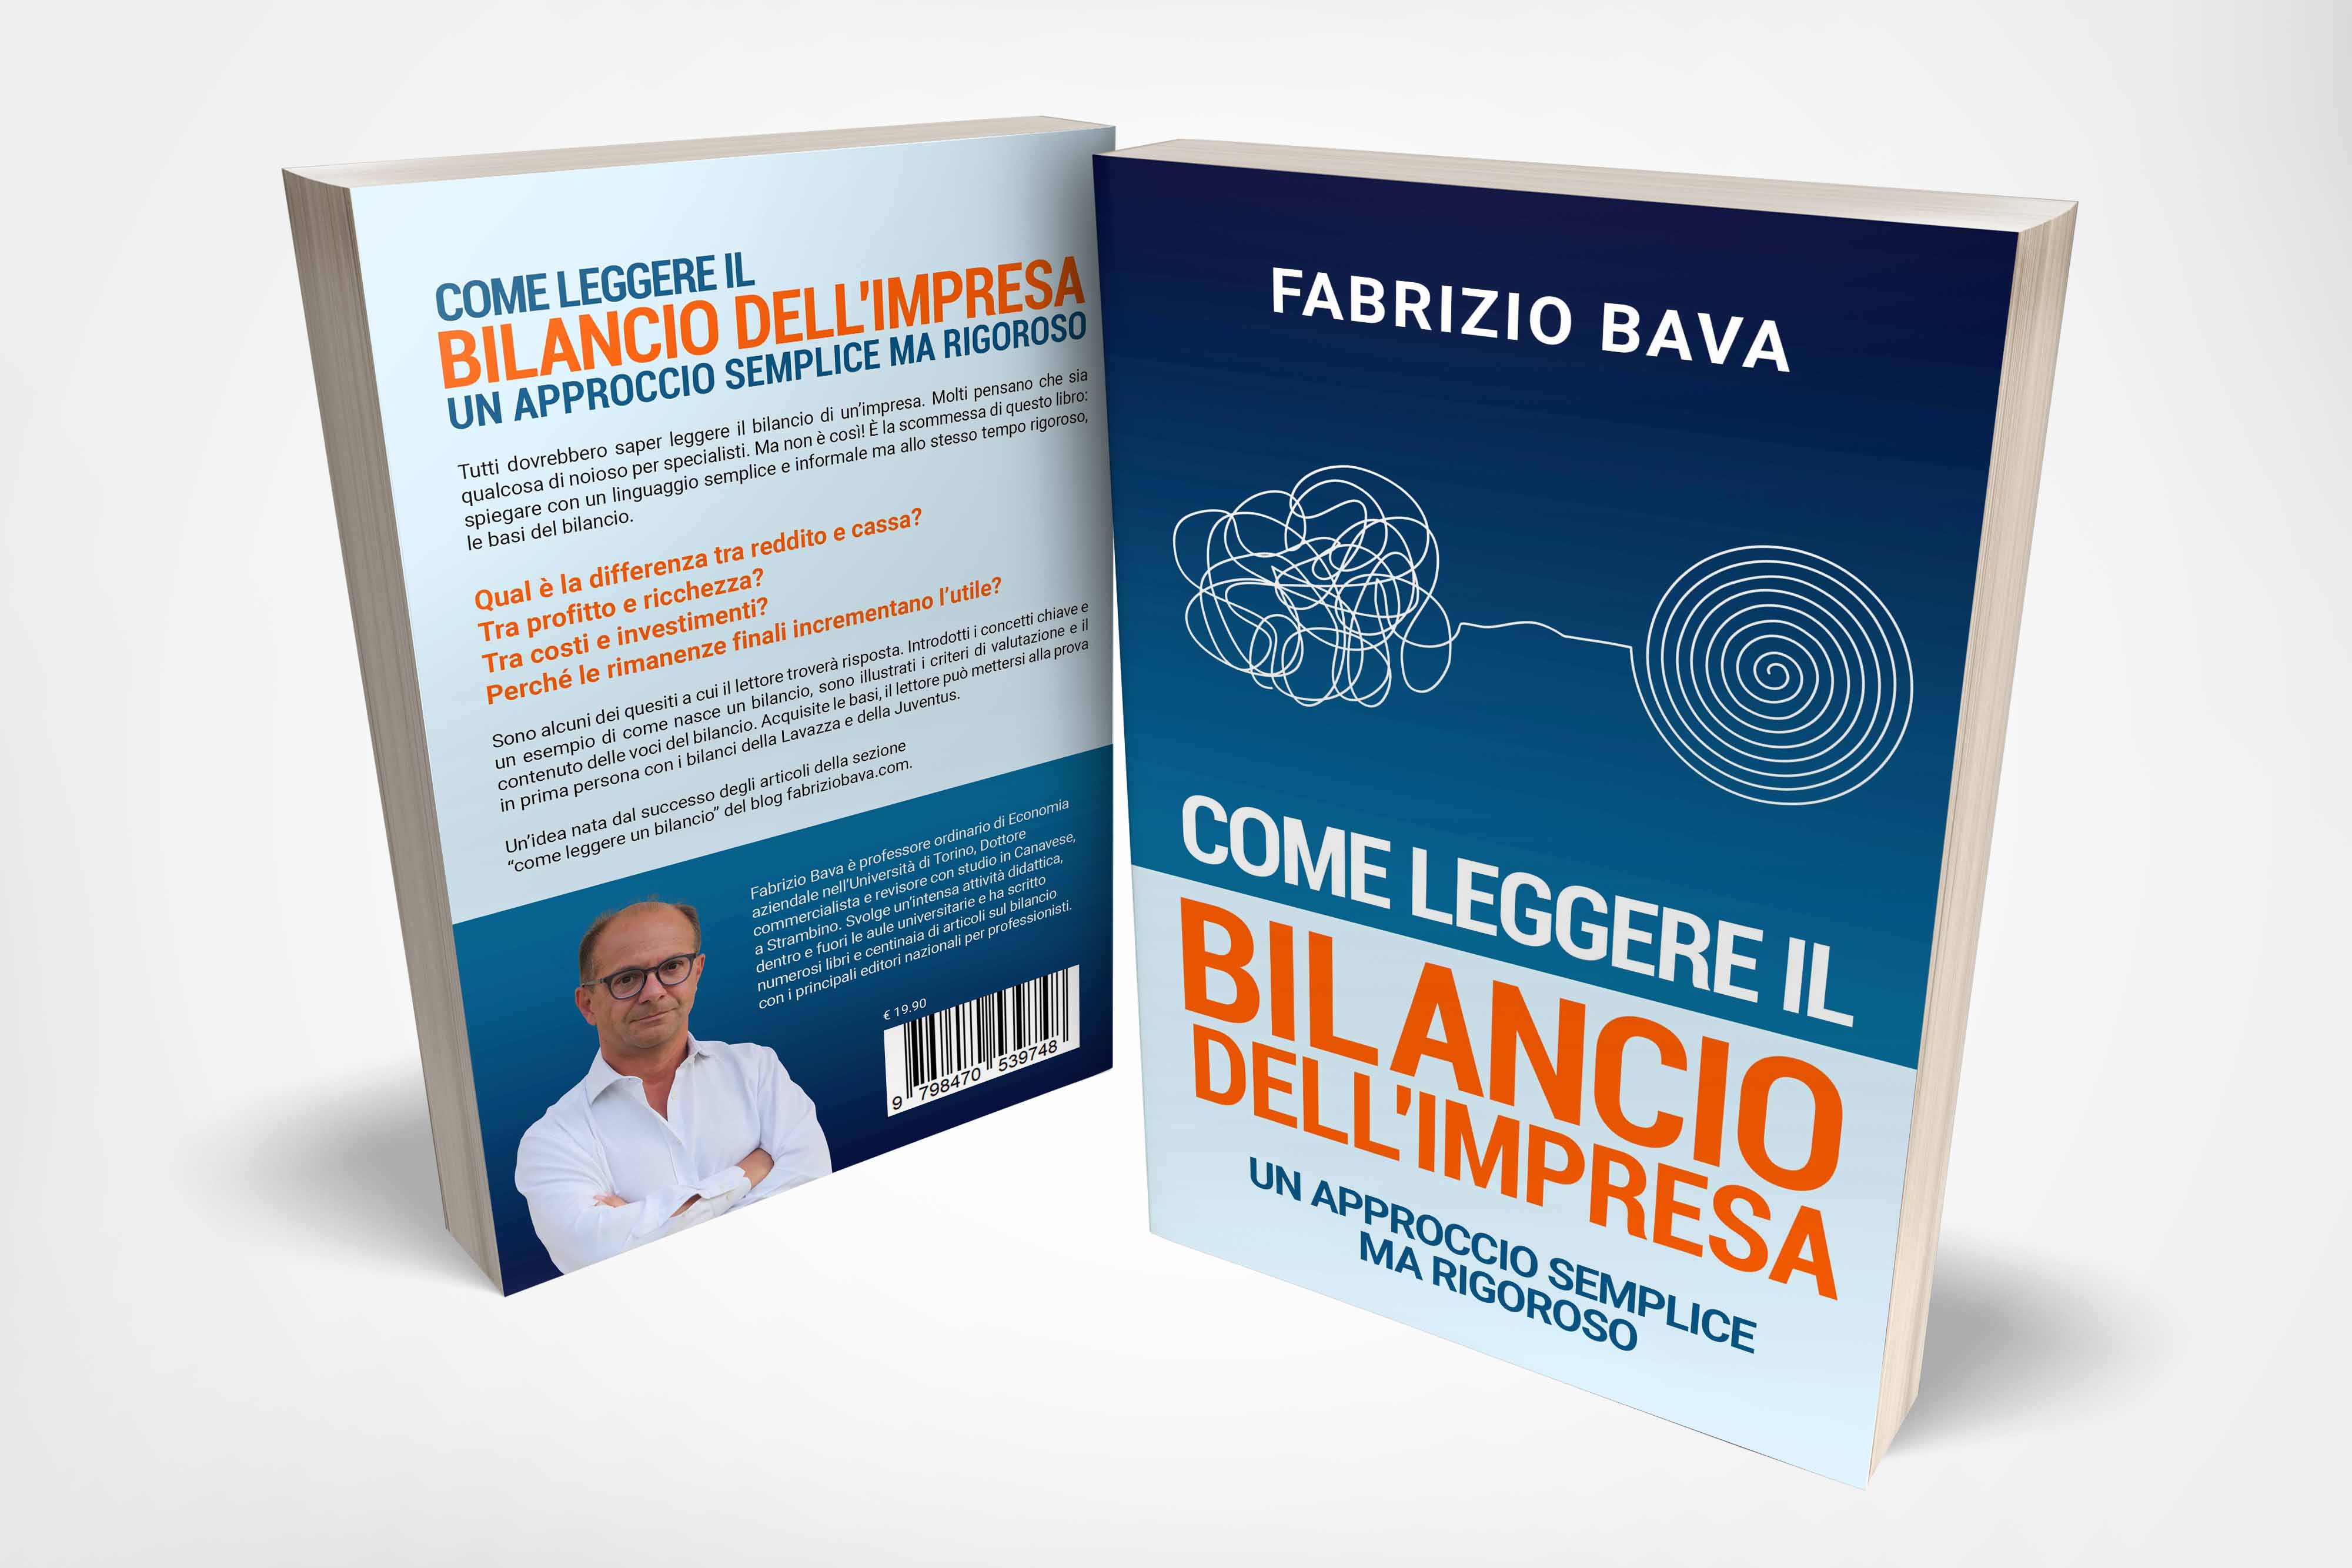 COME LEGGERE IL BILANCIO DELL’IMPRESA, il libro di Fabrizio Bava